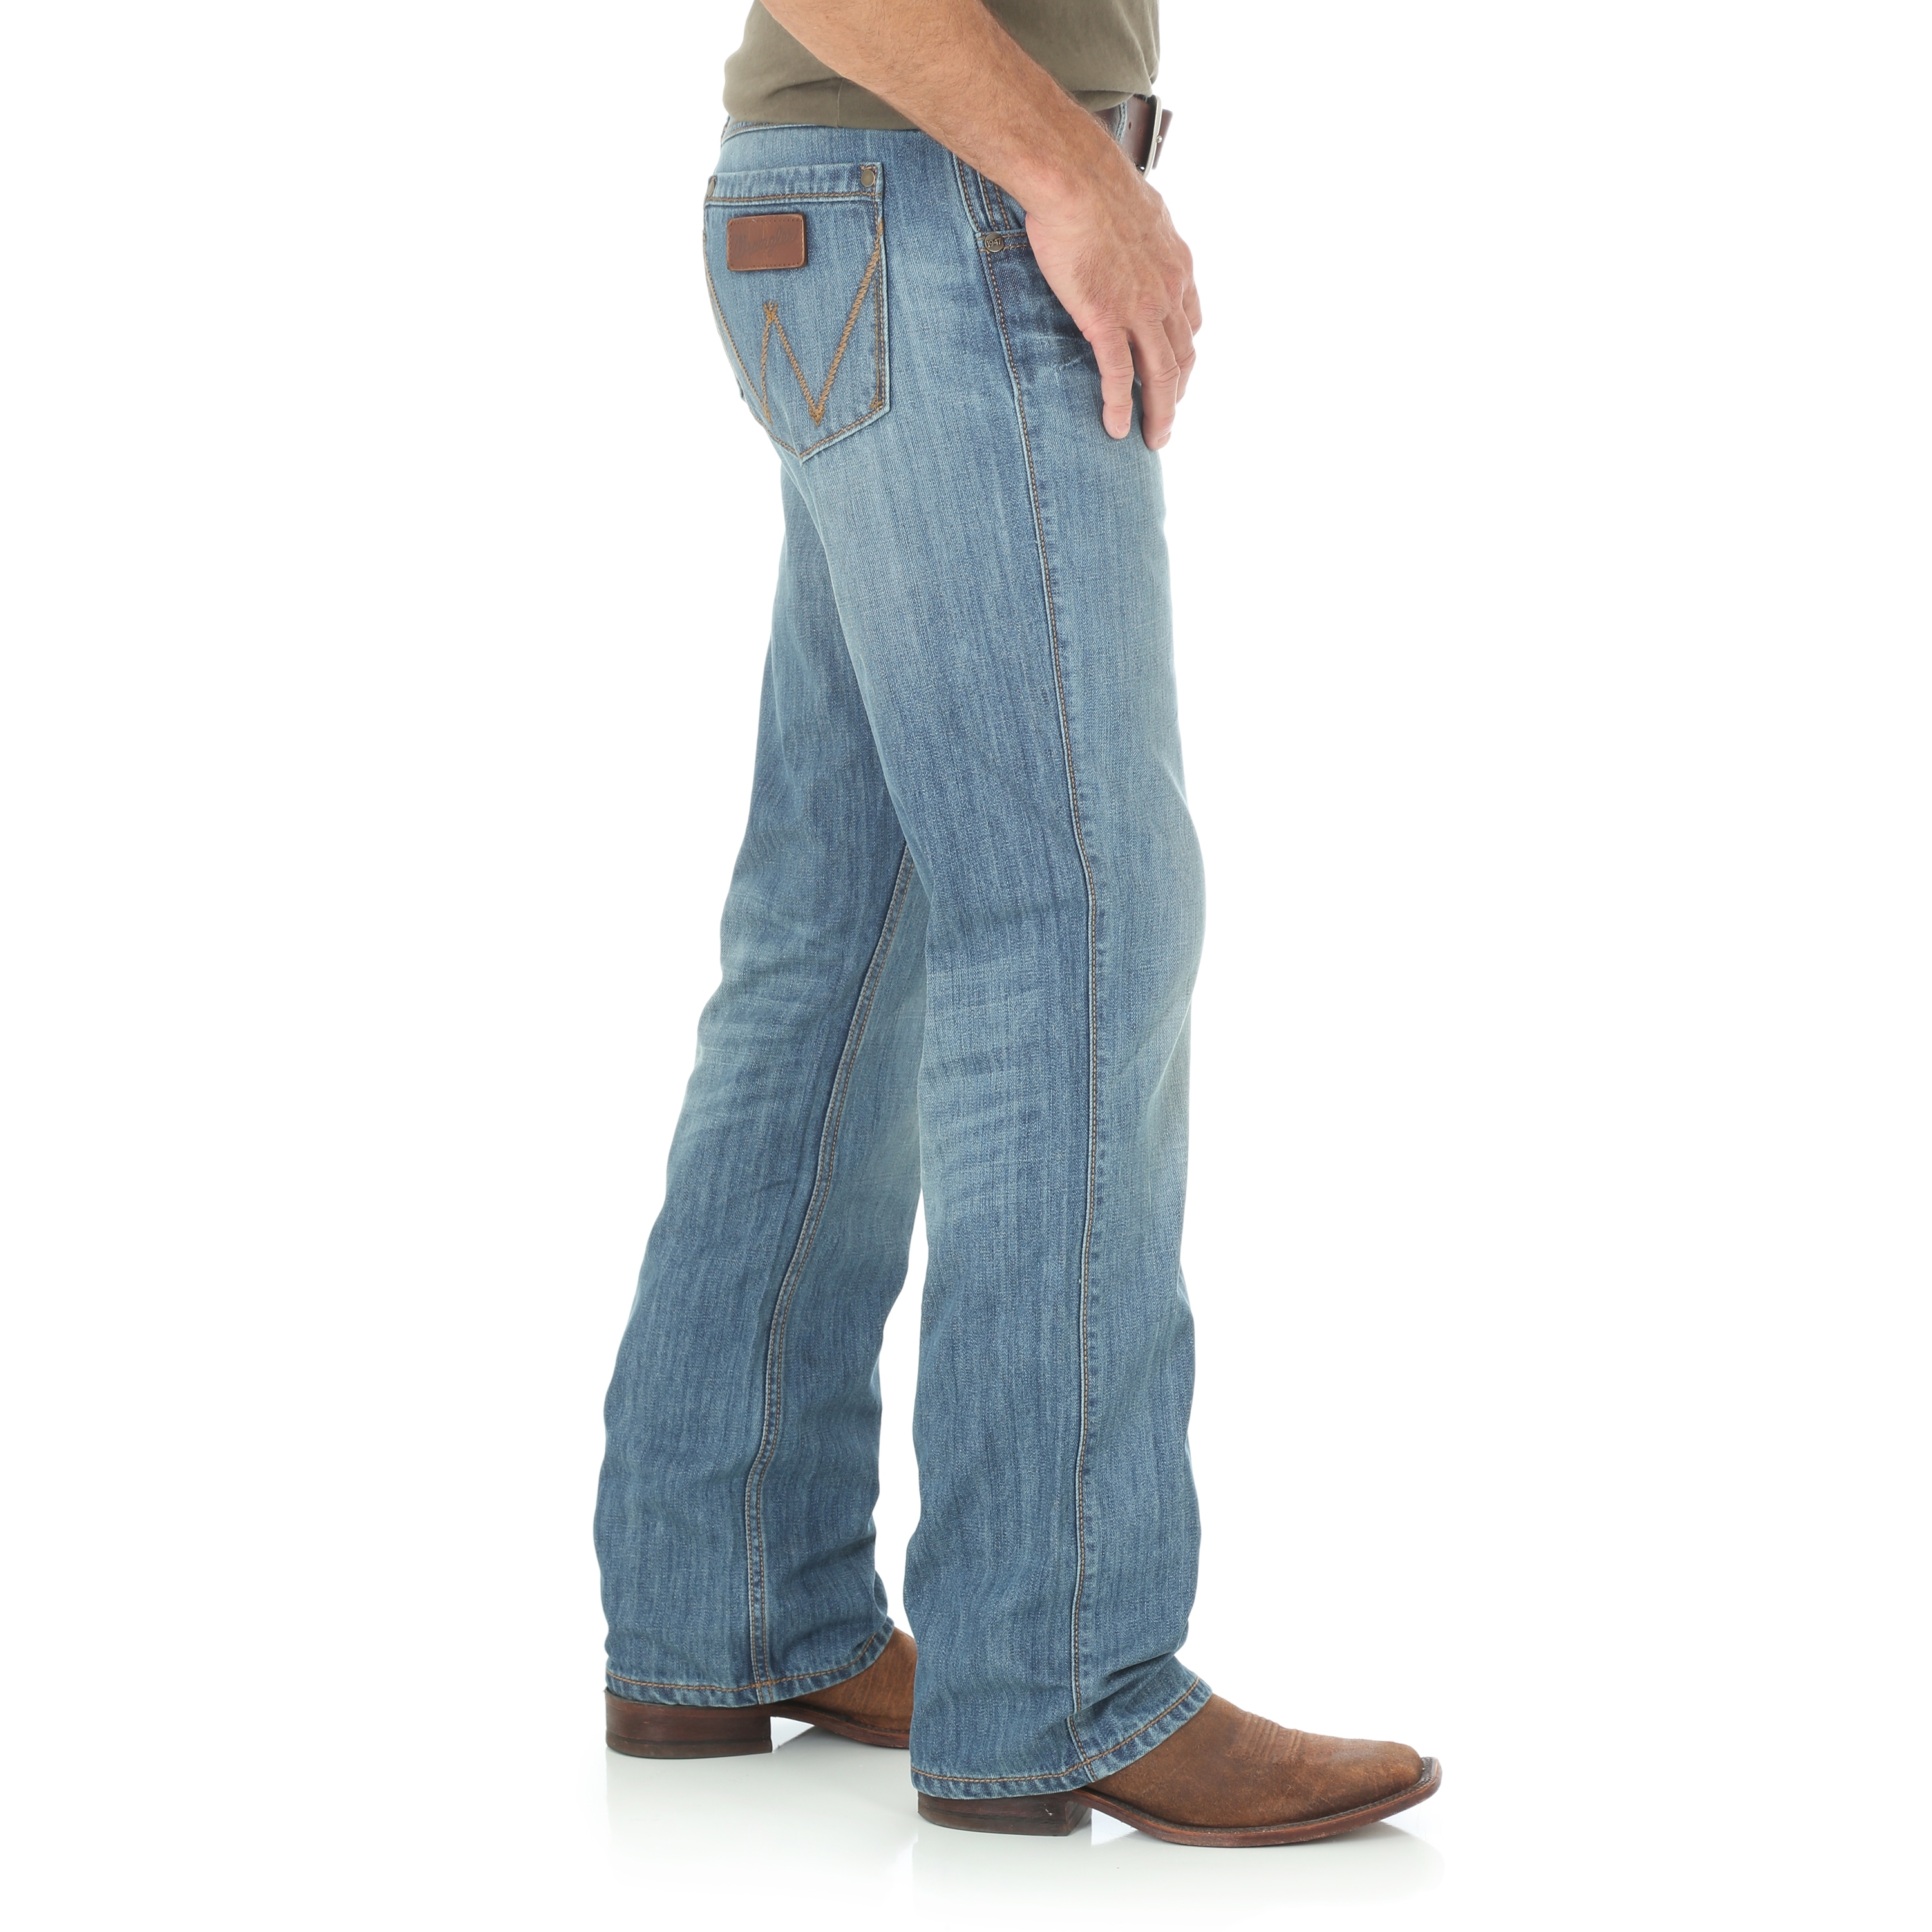 men's wrangler boot cut jeans